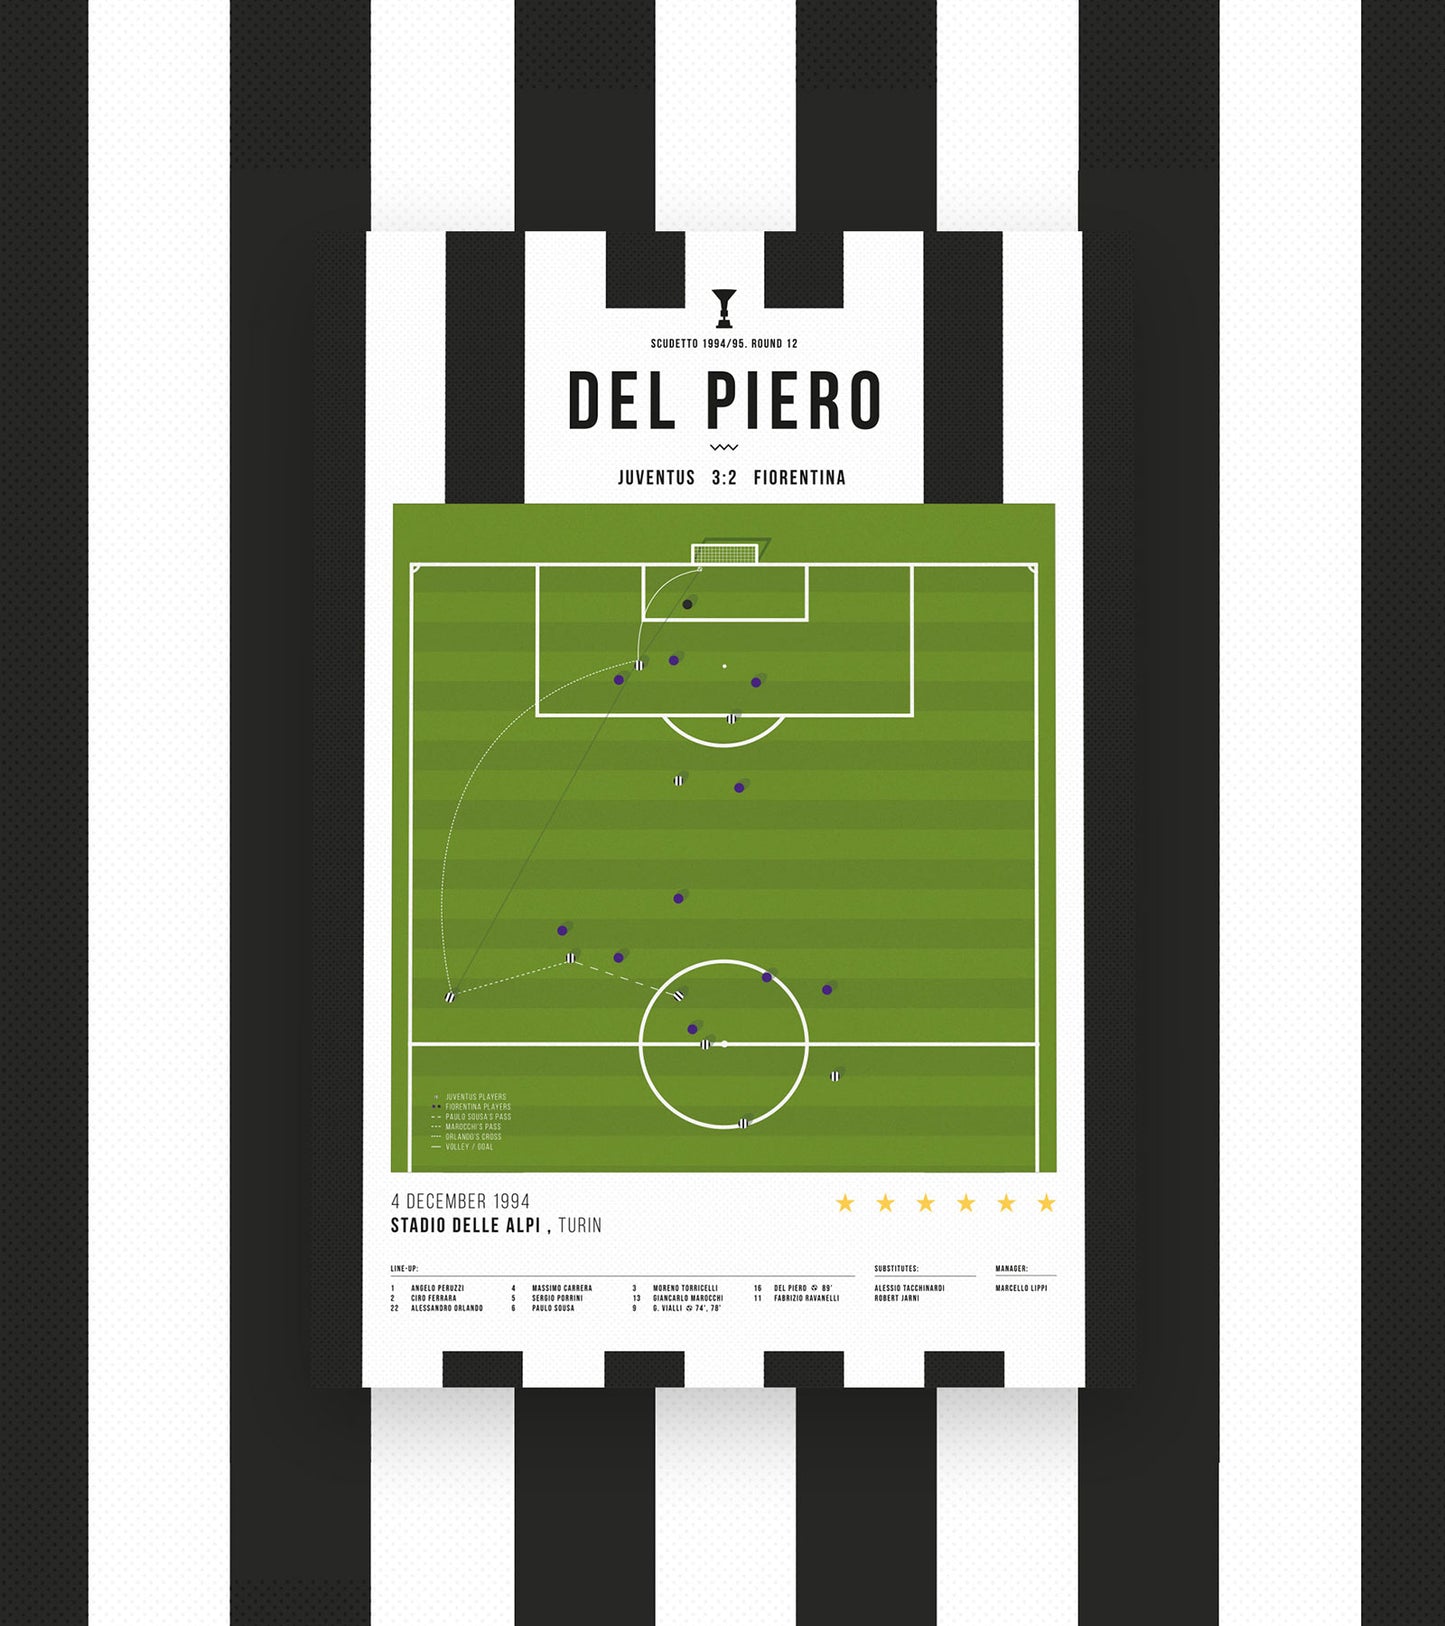 Del Piero Greatest Ever Goal